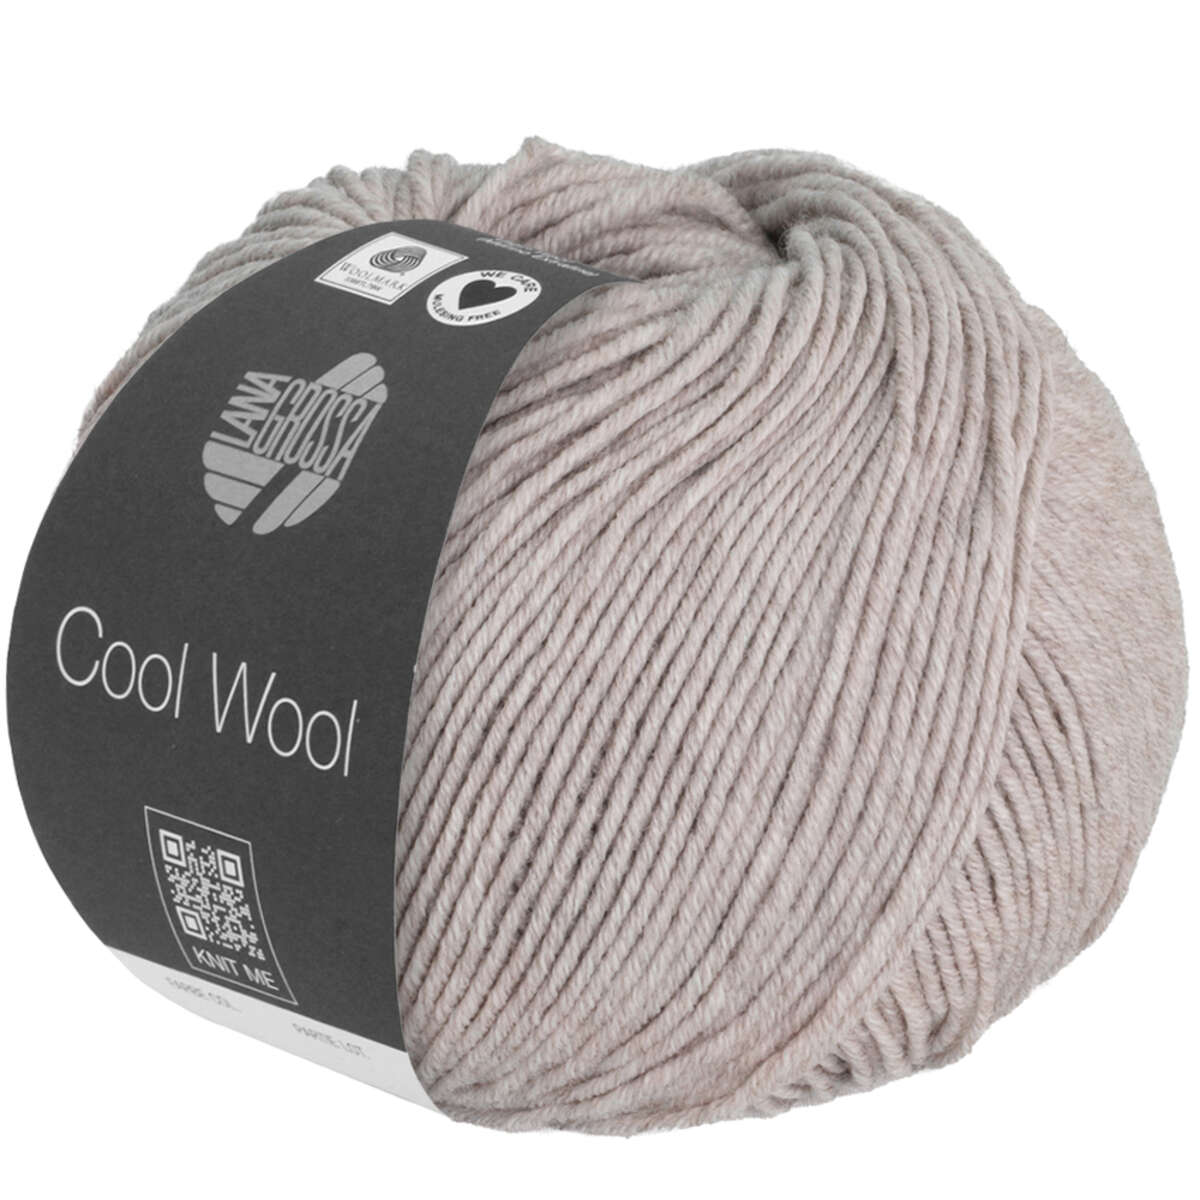 Cool Wool: 1426 | grege meliert